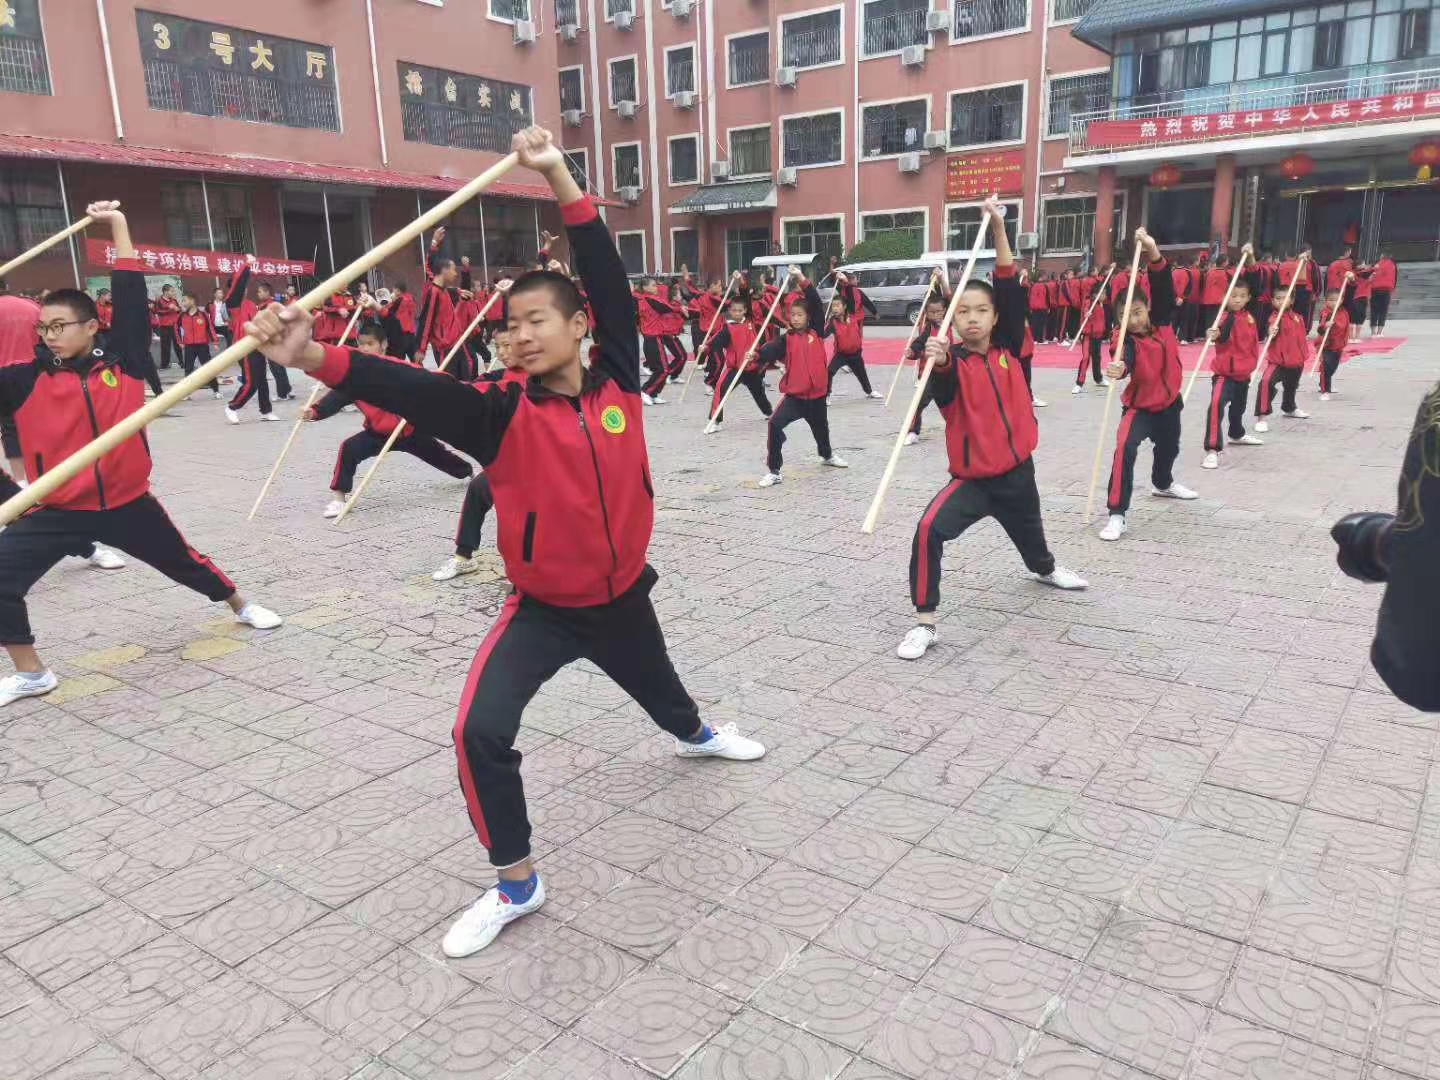 少林寺武術學校學生在練武術